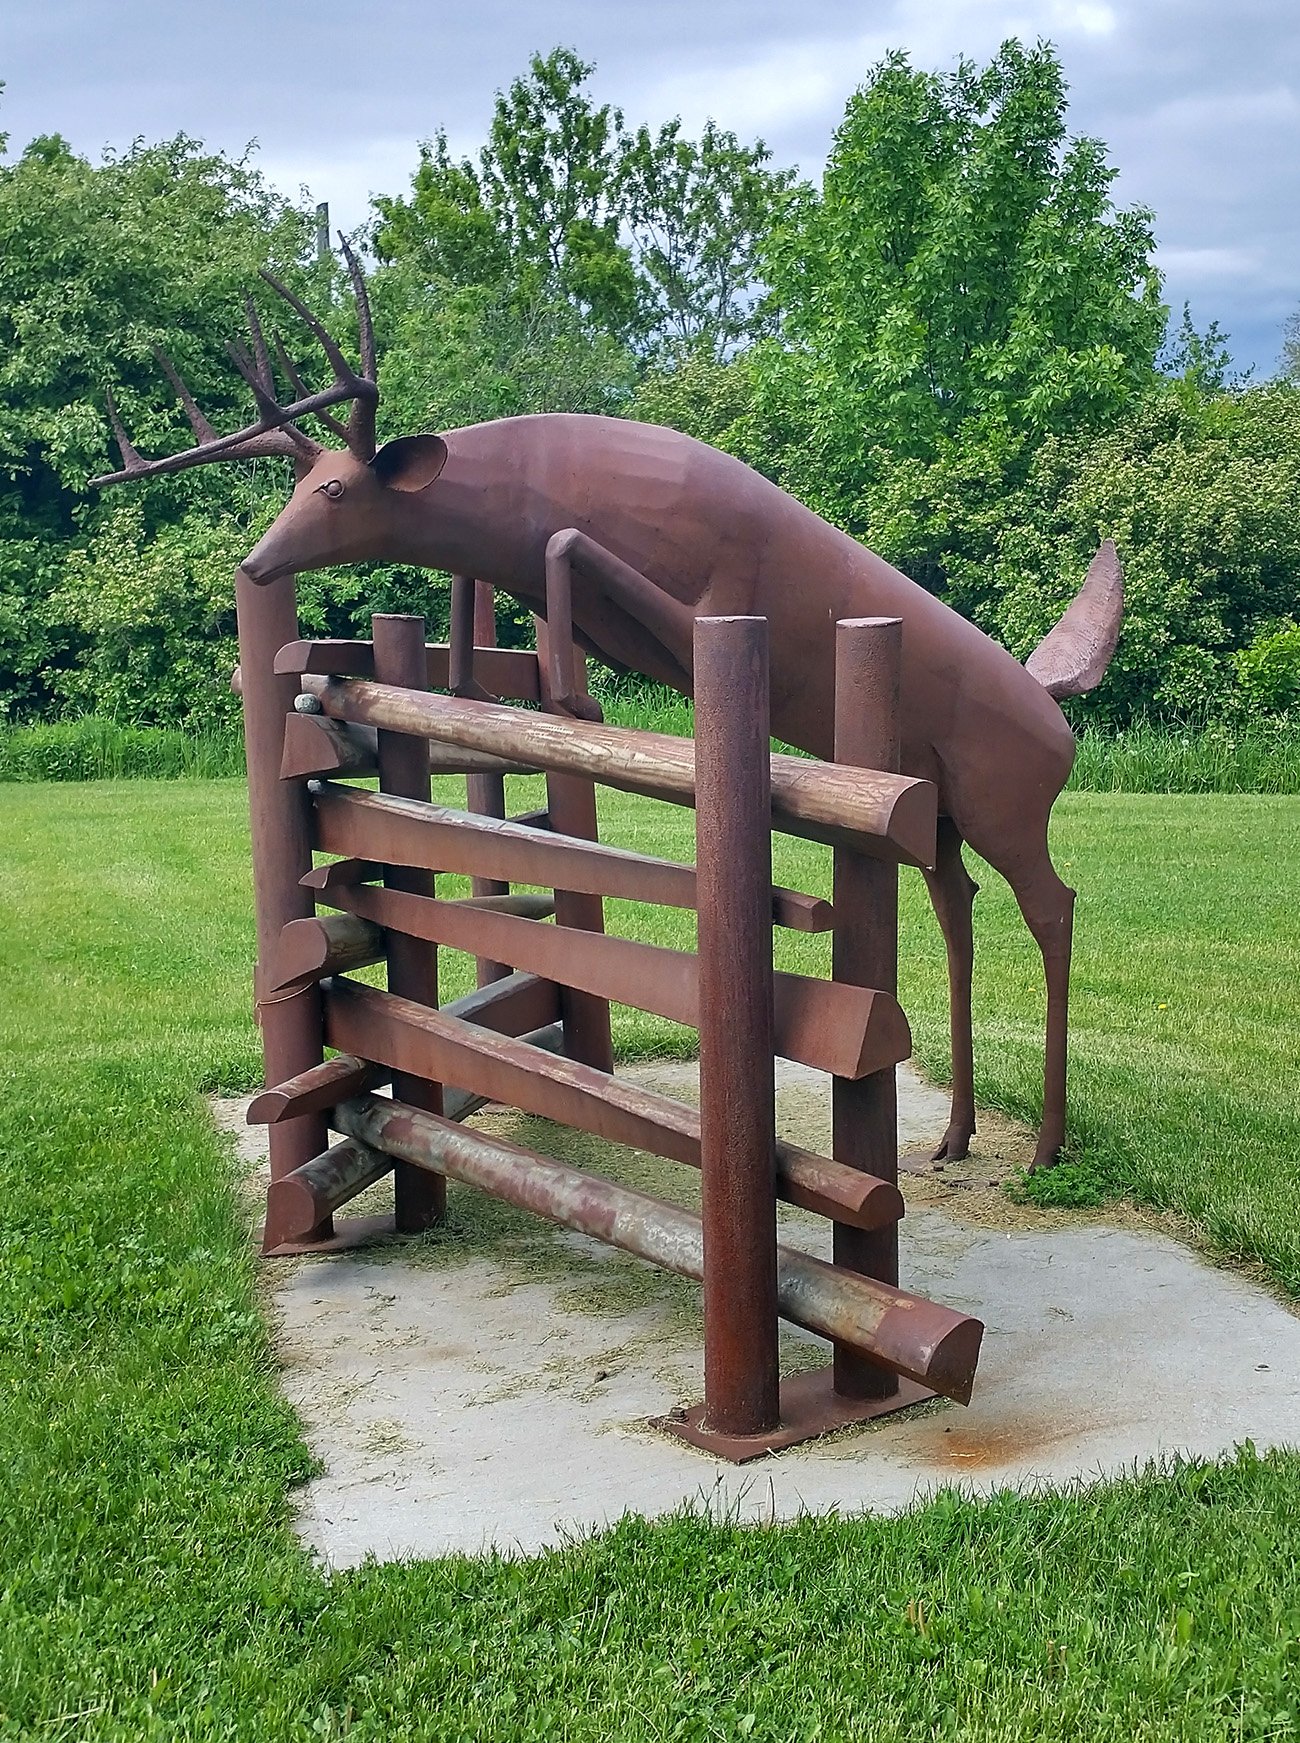 A cool rusty deer sculpture. 